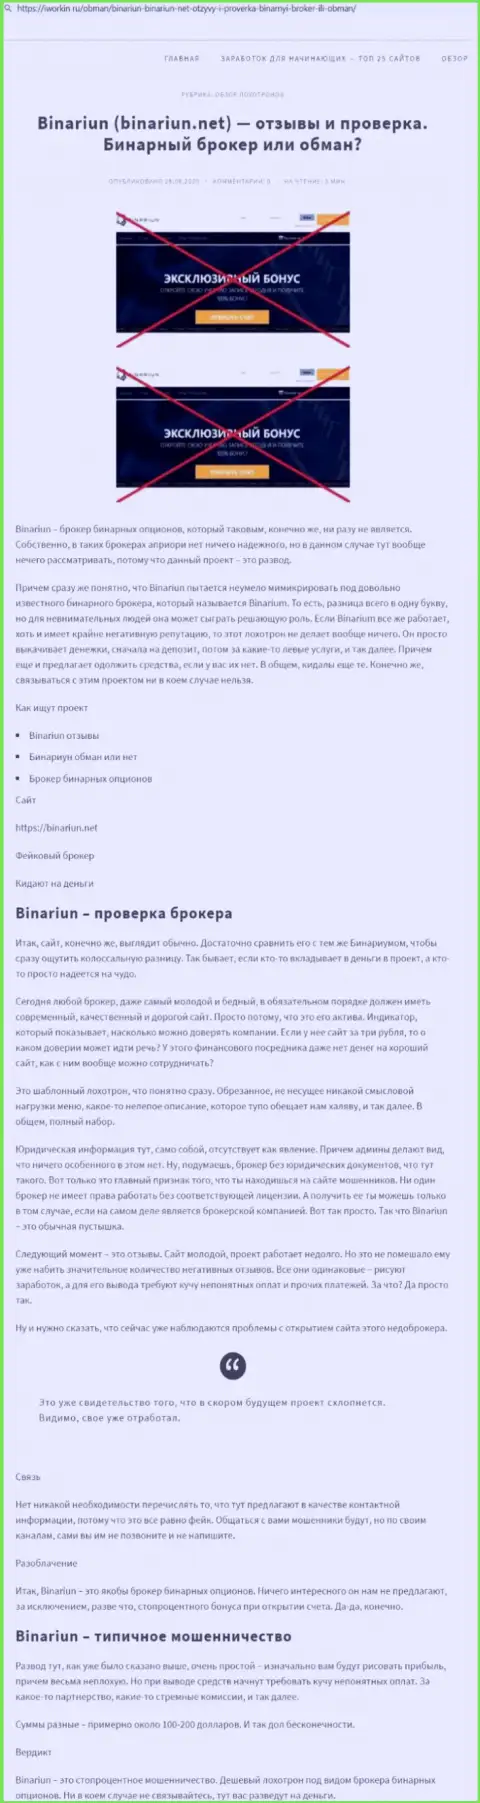 Binariun Net - это МОШЕННИКИ !!! Принципы работы КИДАЛОВА (обзор мошеннических действий)